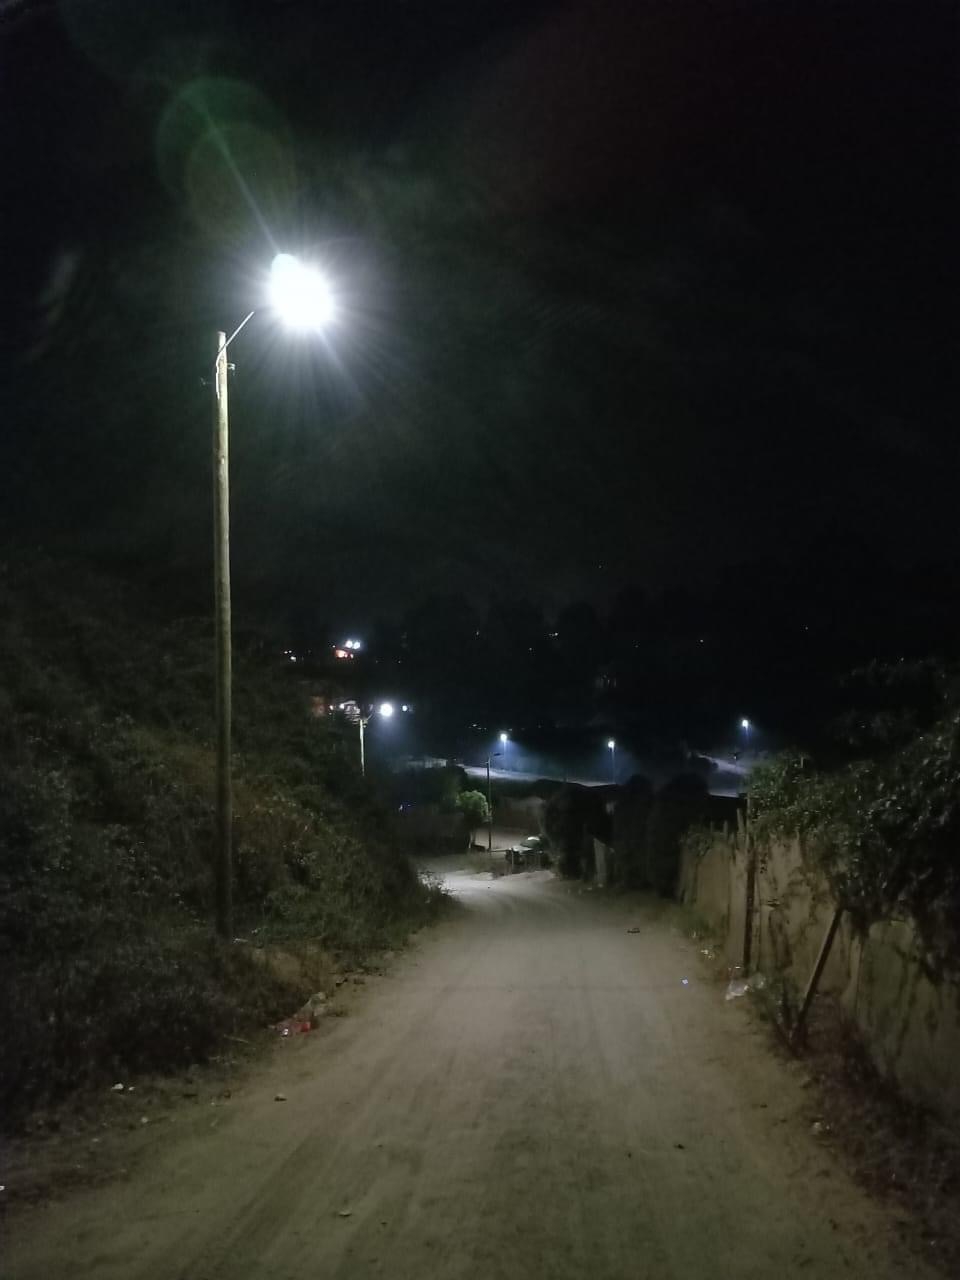 Comunidades rurales de Puchuncaví iluminan sus calles por primera vez gracias a proyecto de alumbrado fotovoltaico